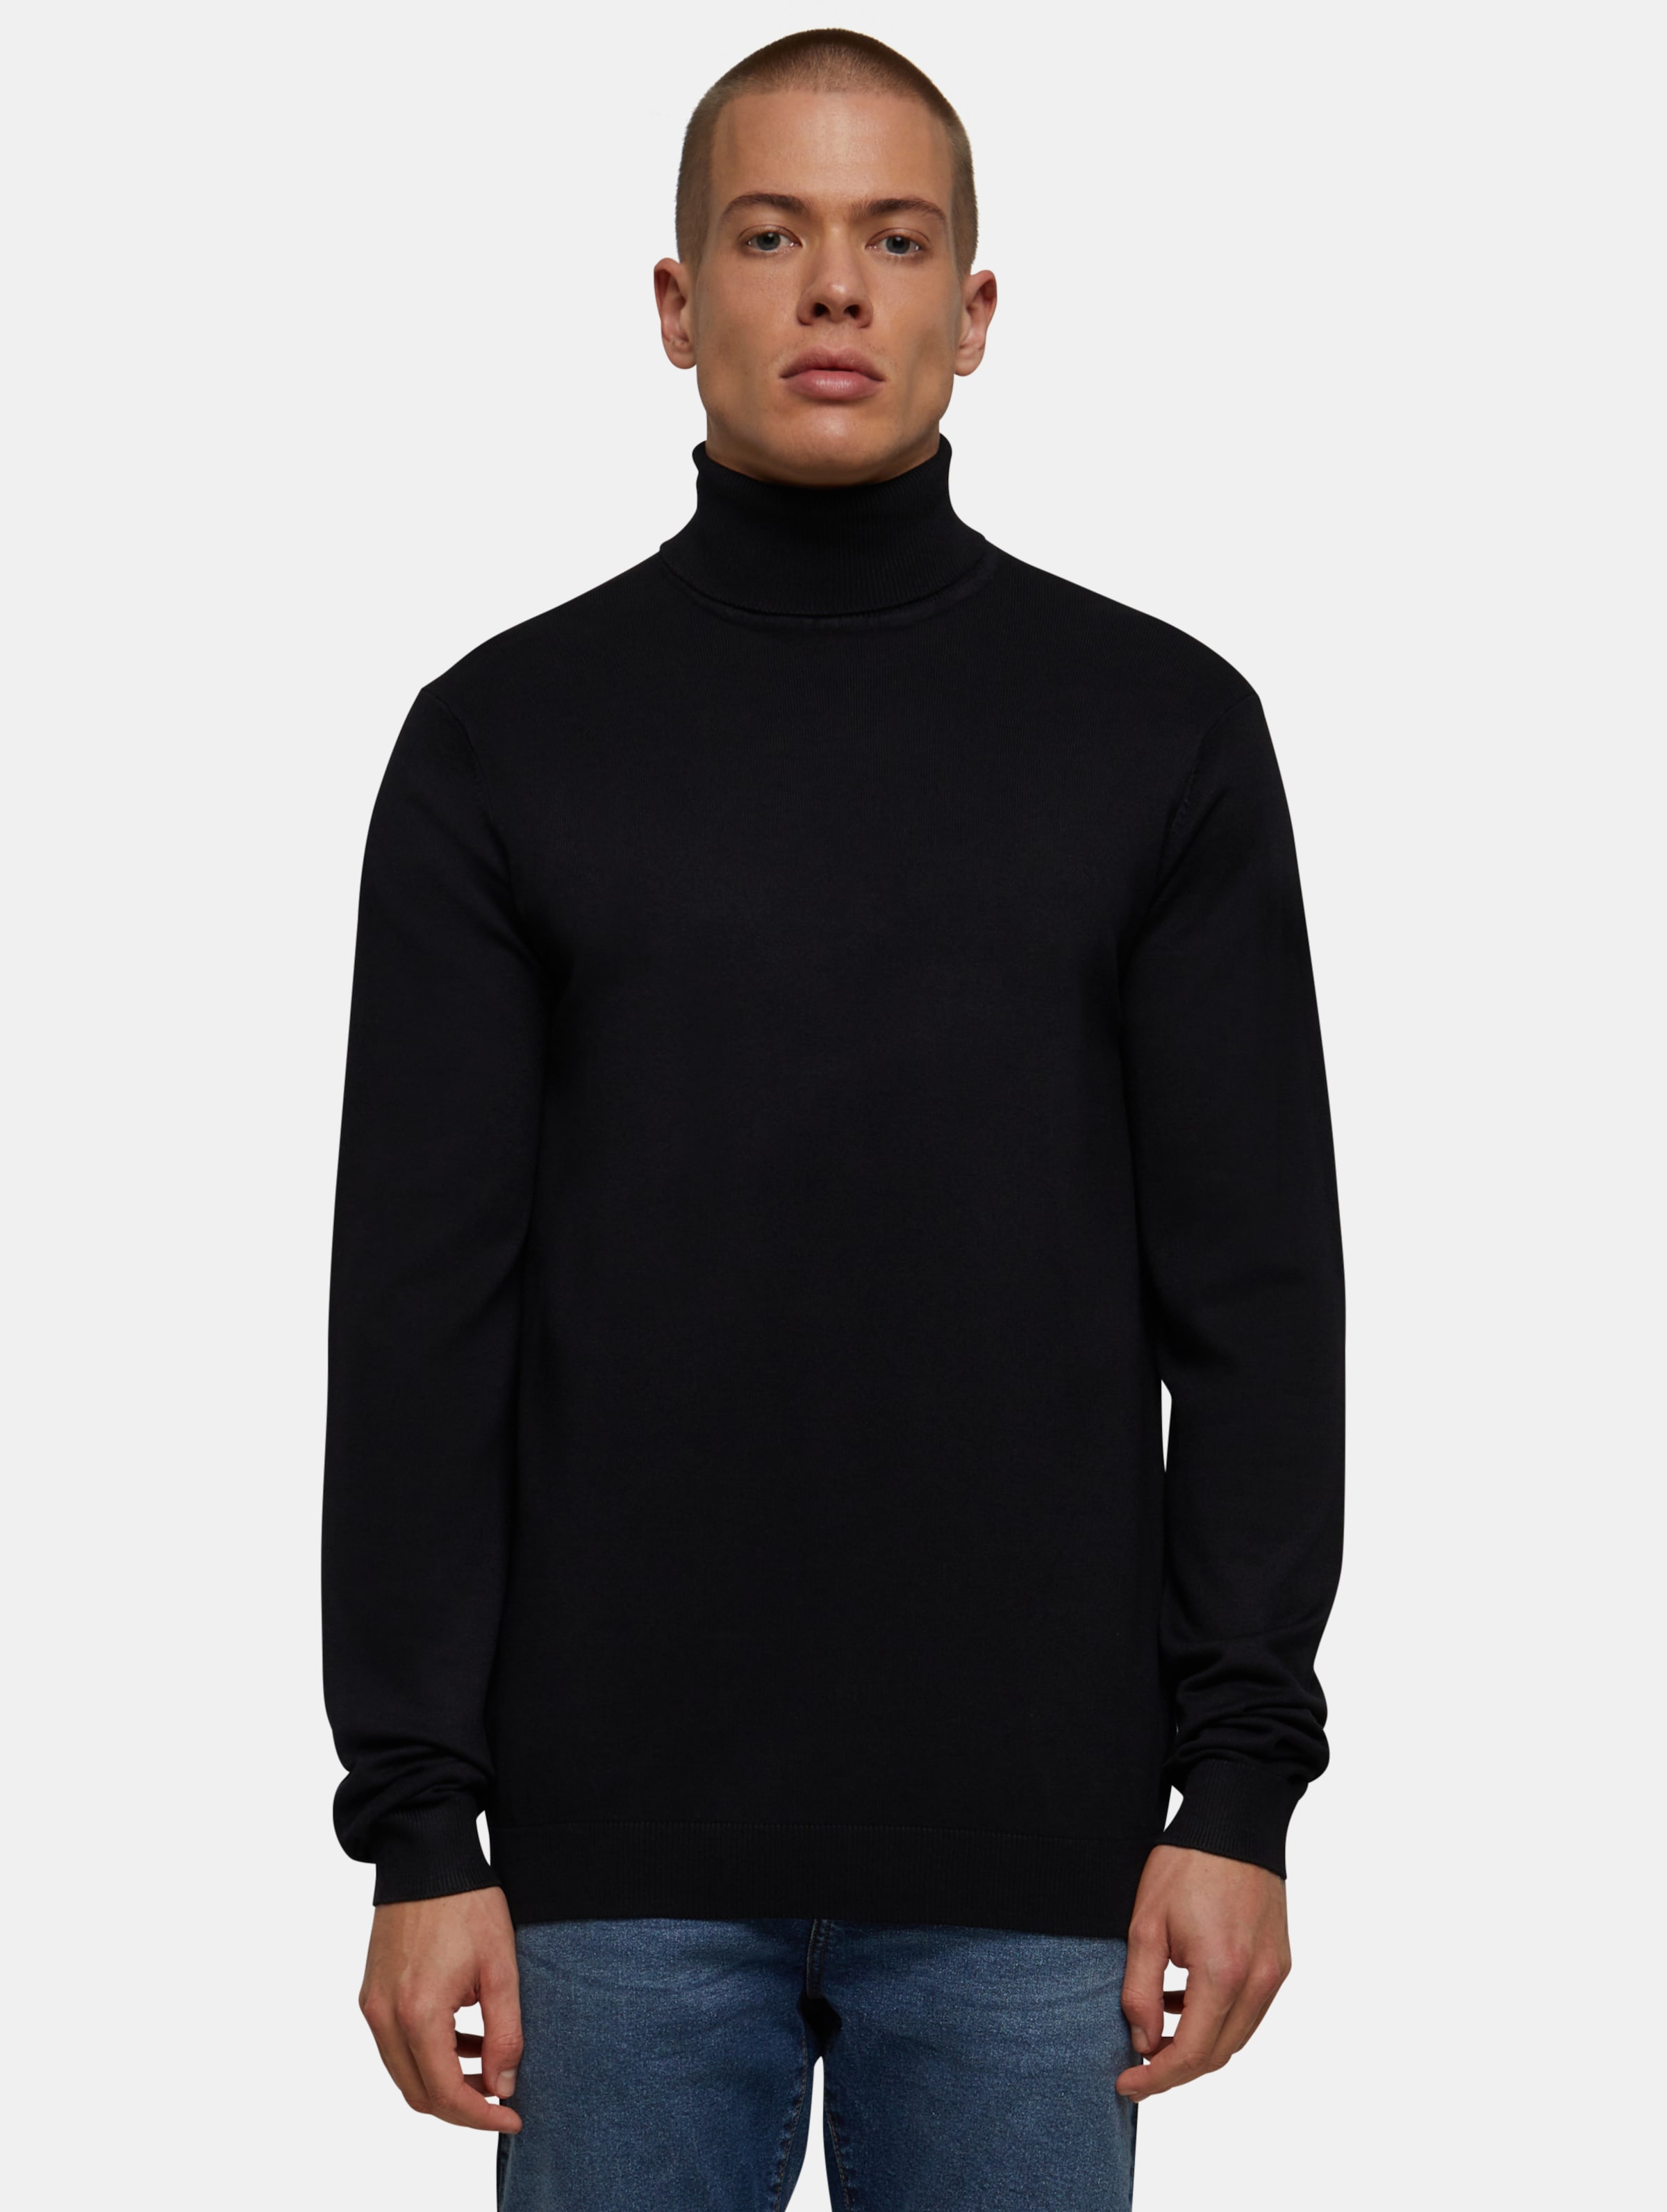 Urban Classics - Knitted Turtleneck Sweater - 3XL - Zwart